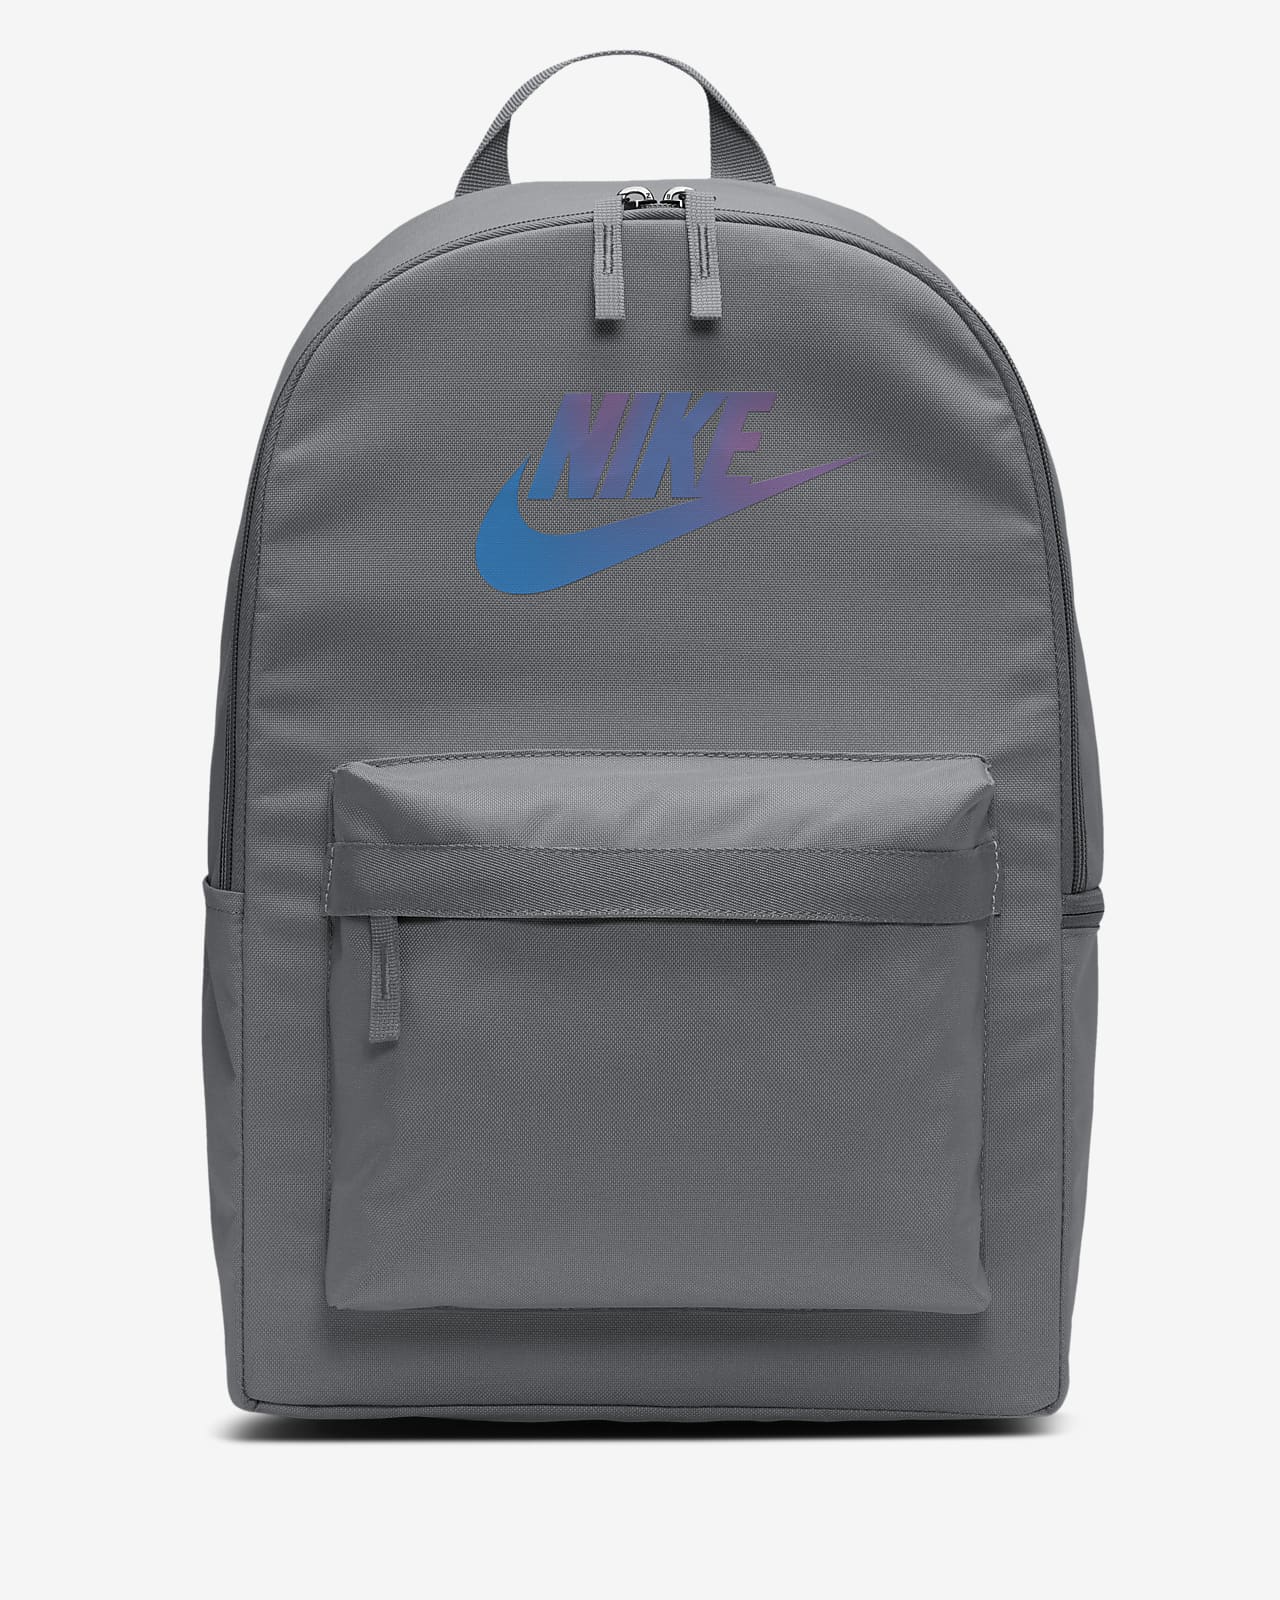 single strap backpack nike